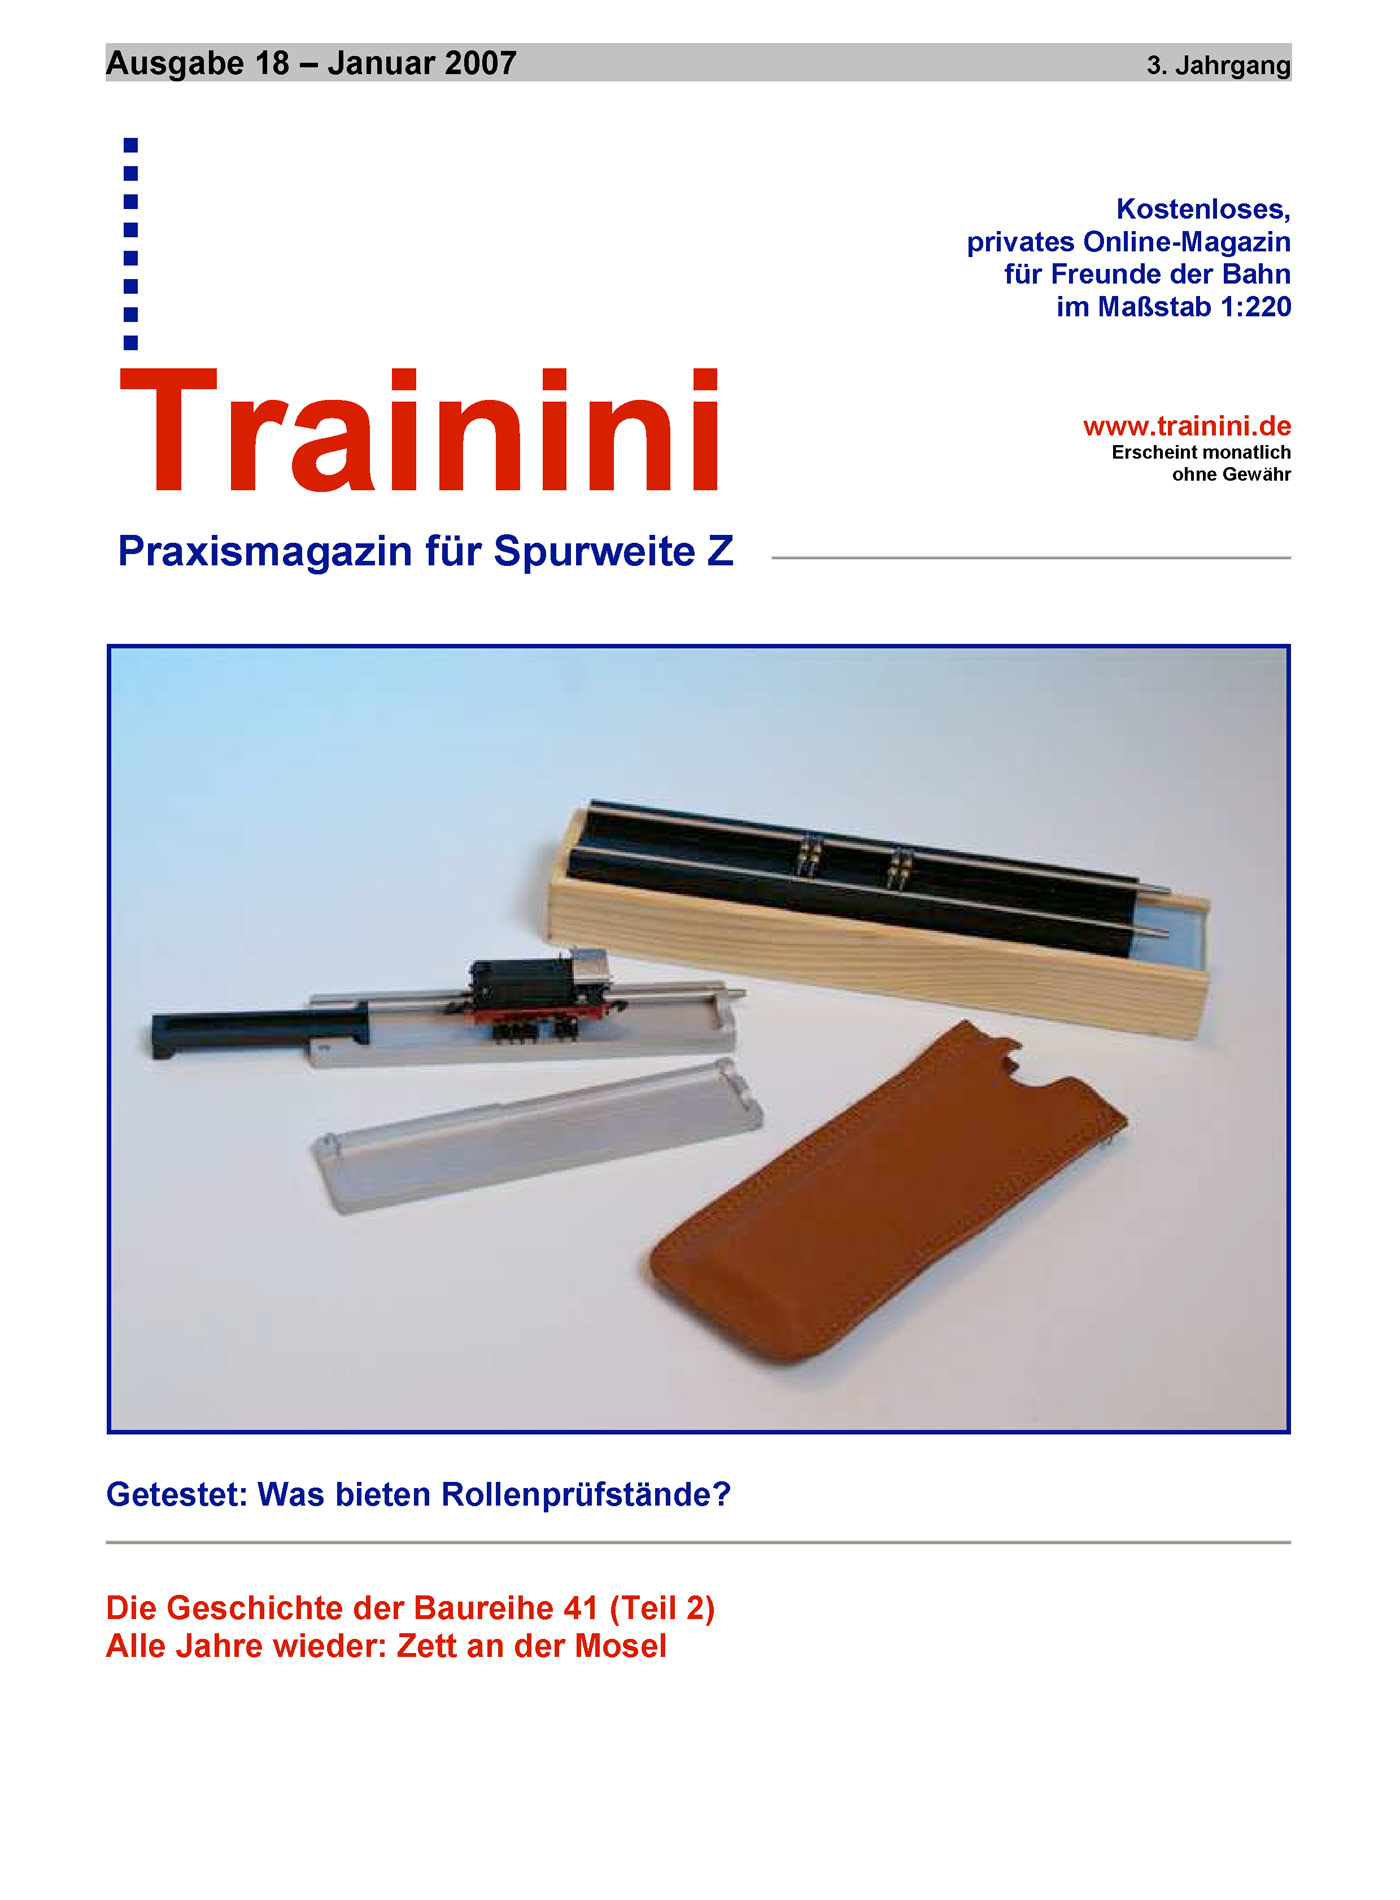 Trainini Ausgabe Januar 2007